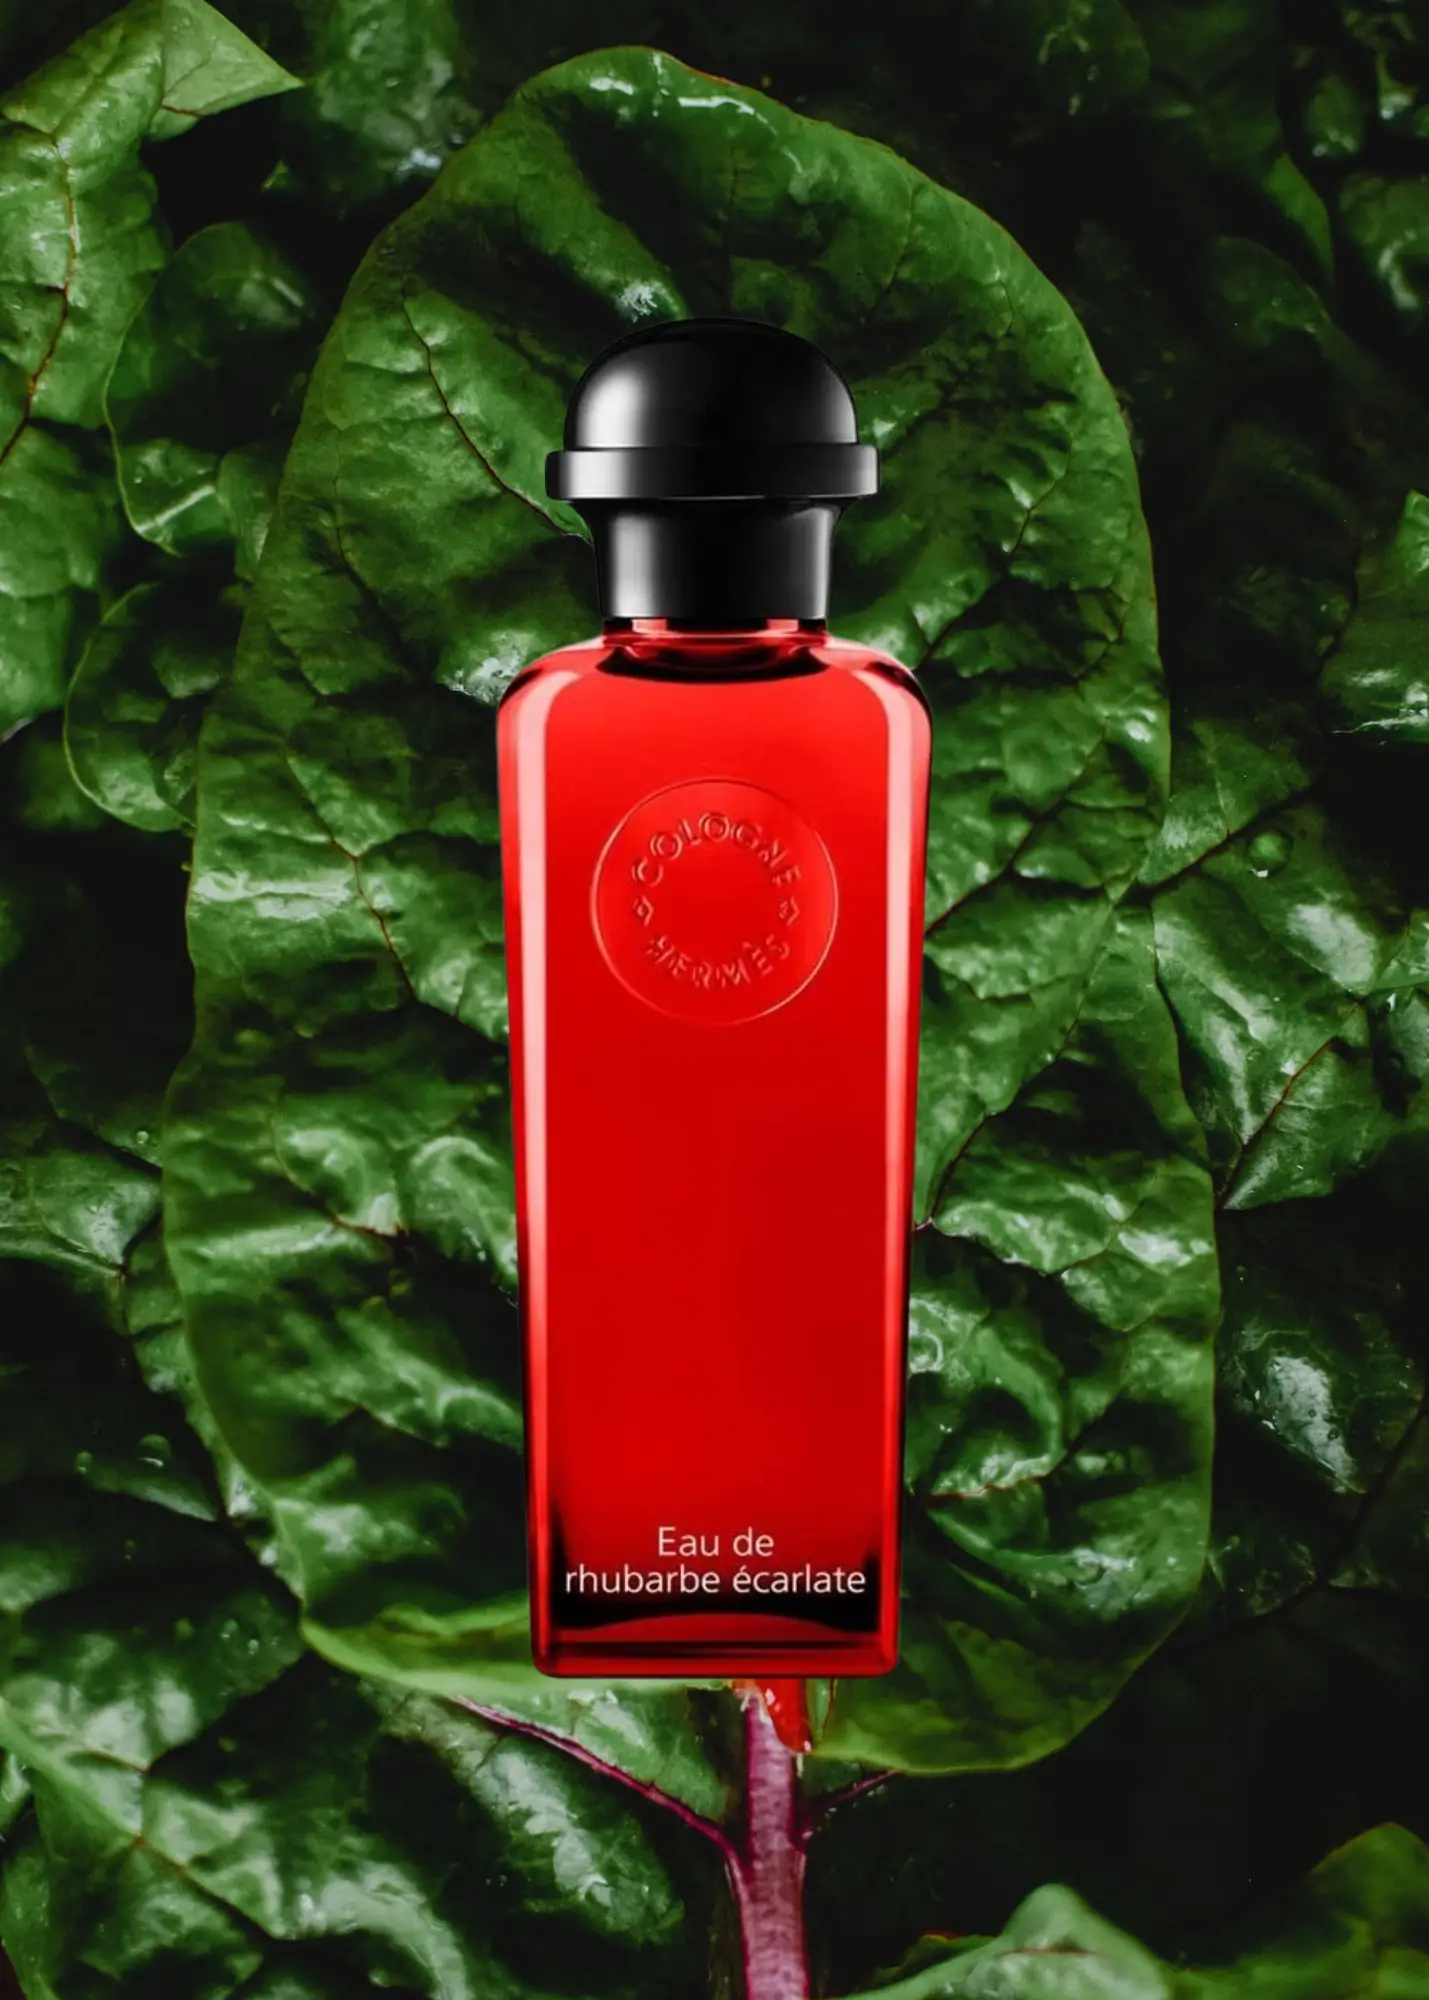 Hermes Eau De Rhubarbe Ecarlate
Best Rhubarb Perfumes